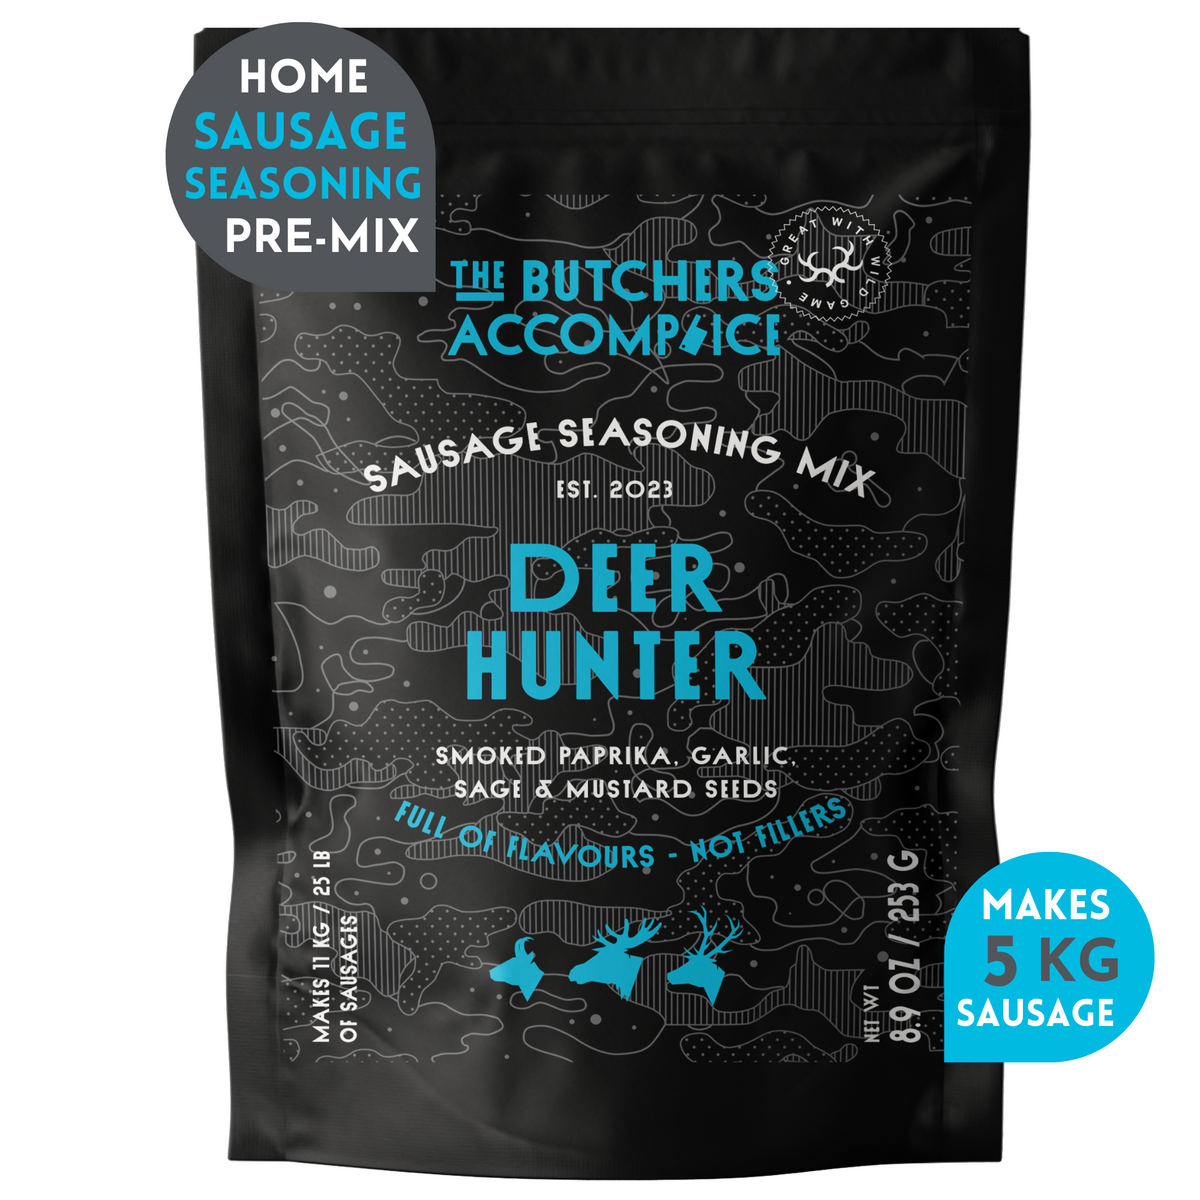 Sausage Seasoning Pack: Deer Hunter (Venison) Sausage 253g